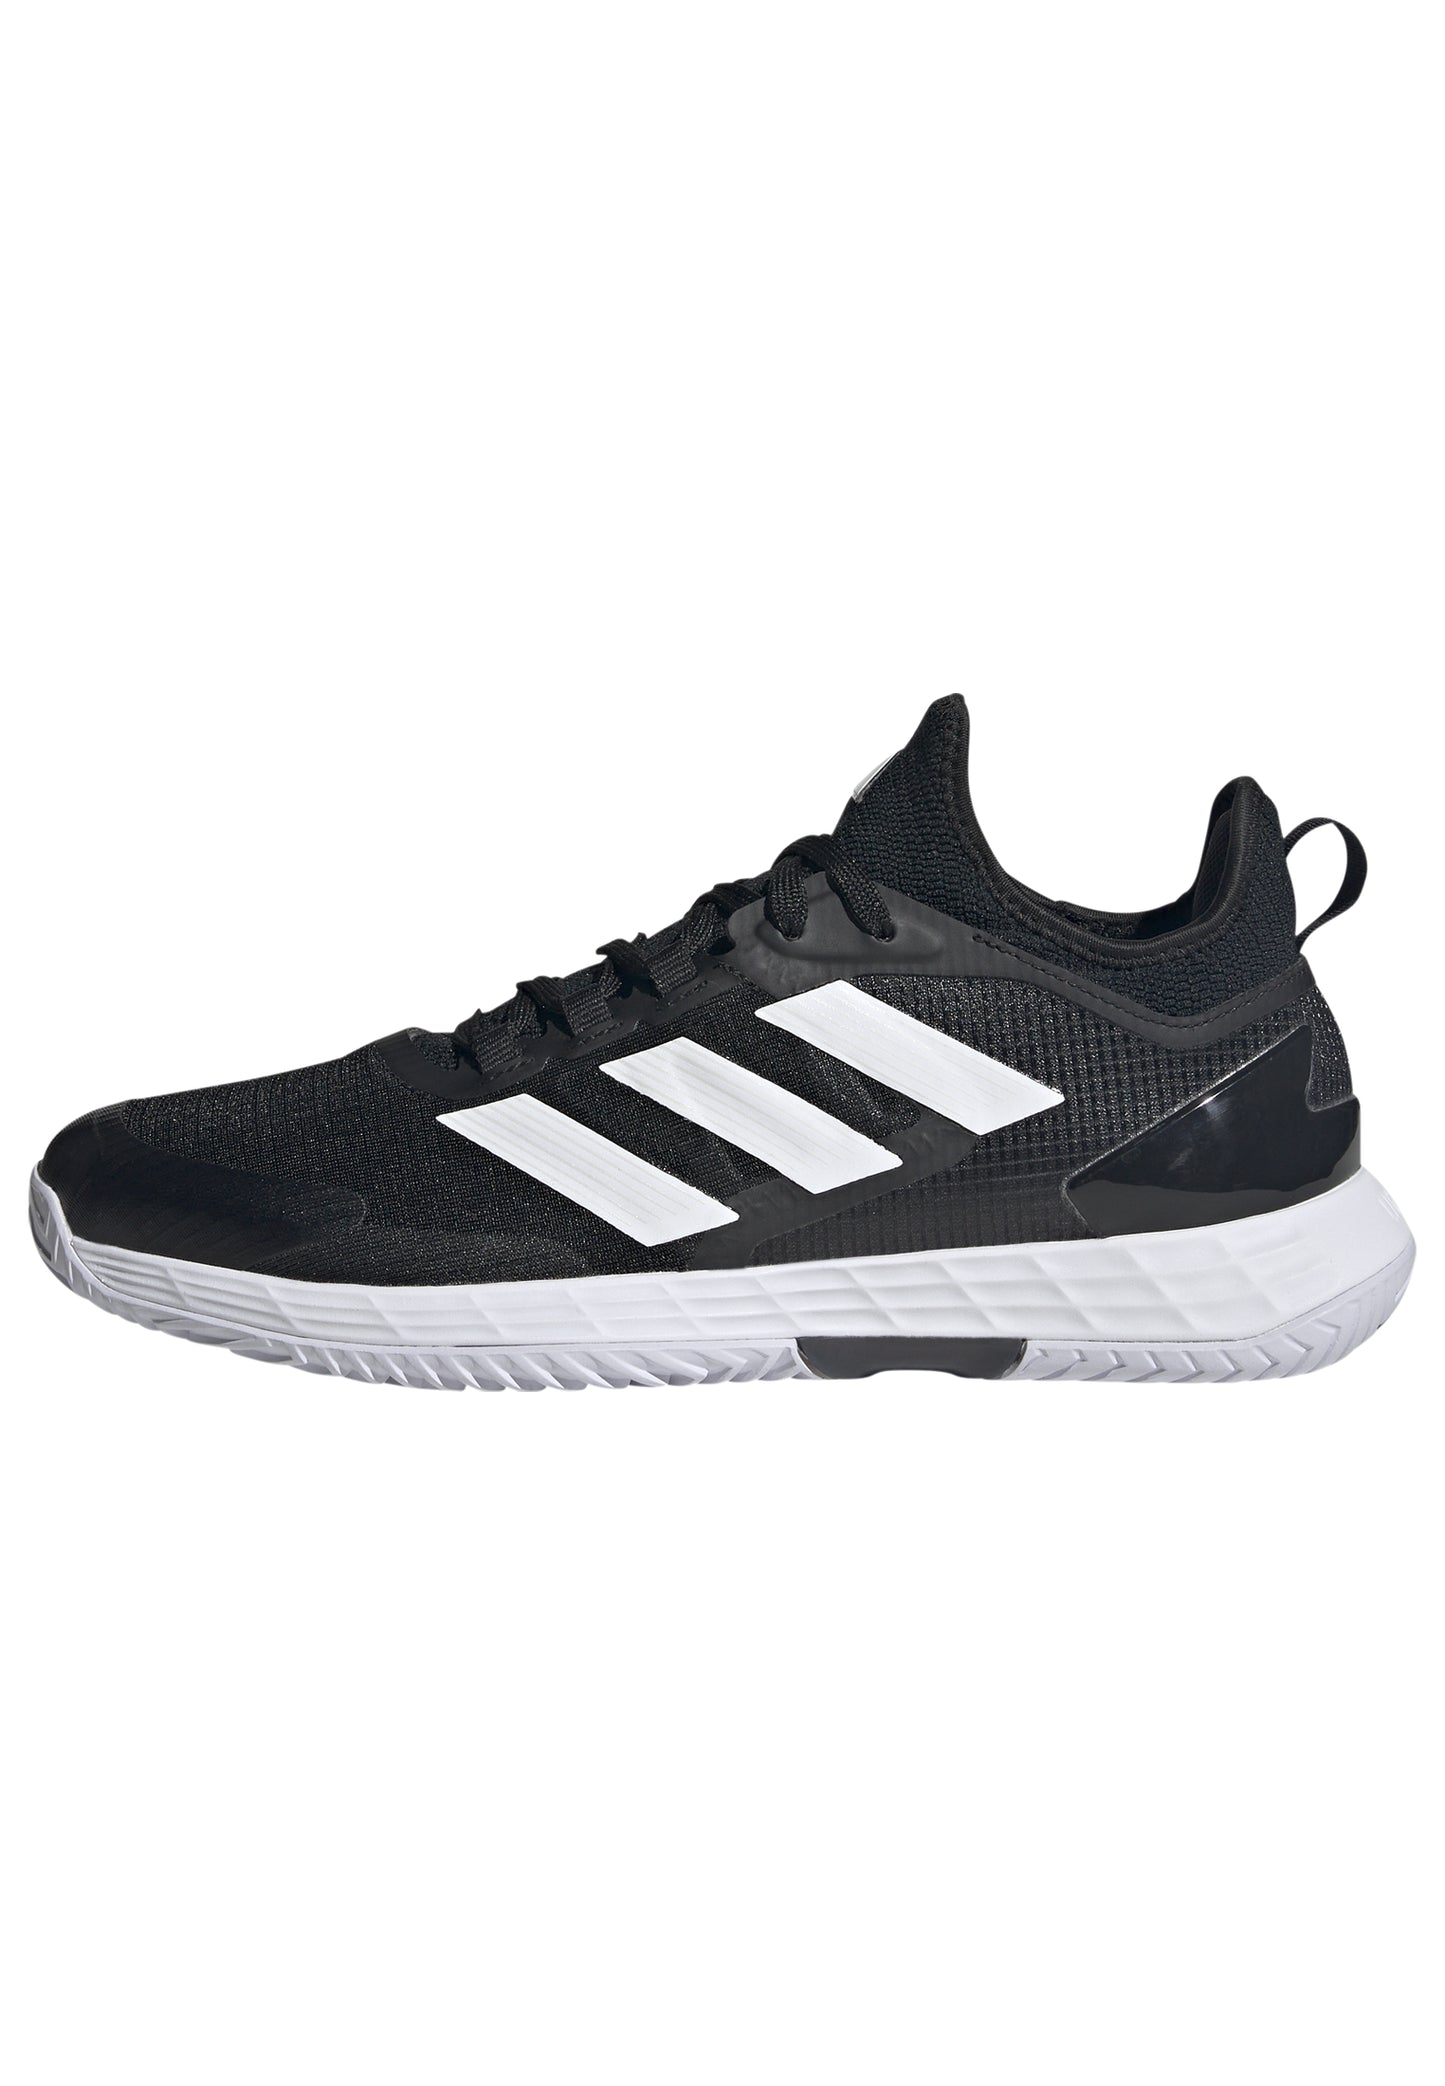 adidas Adizero Ubersonic 4.1 men tennis shoes - Black ID1564